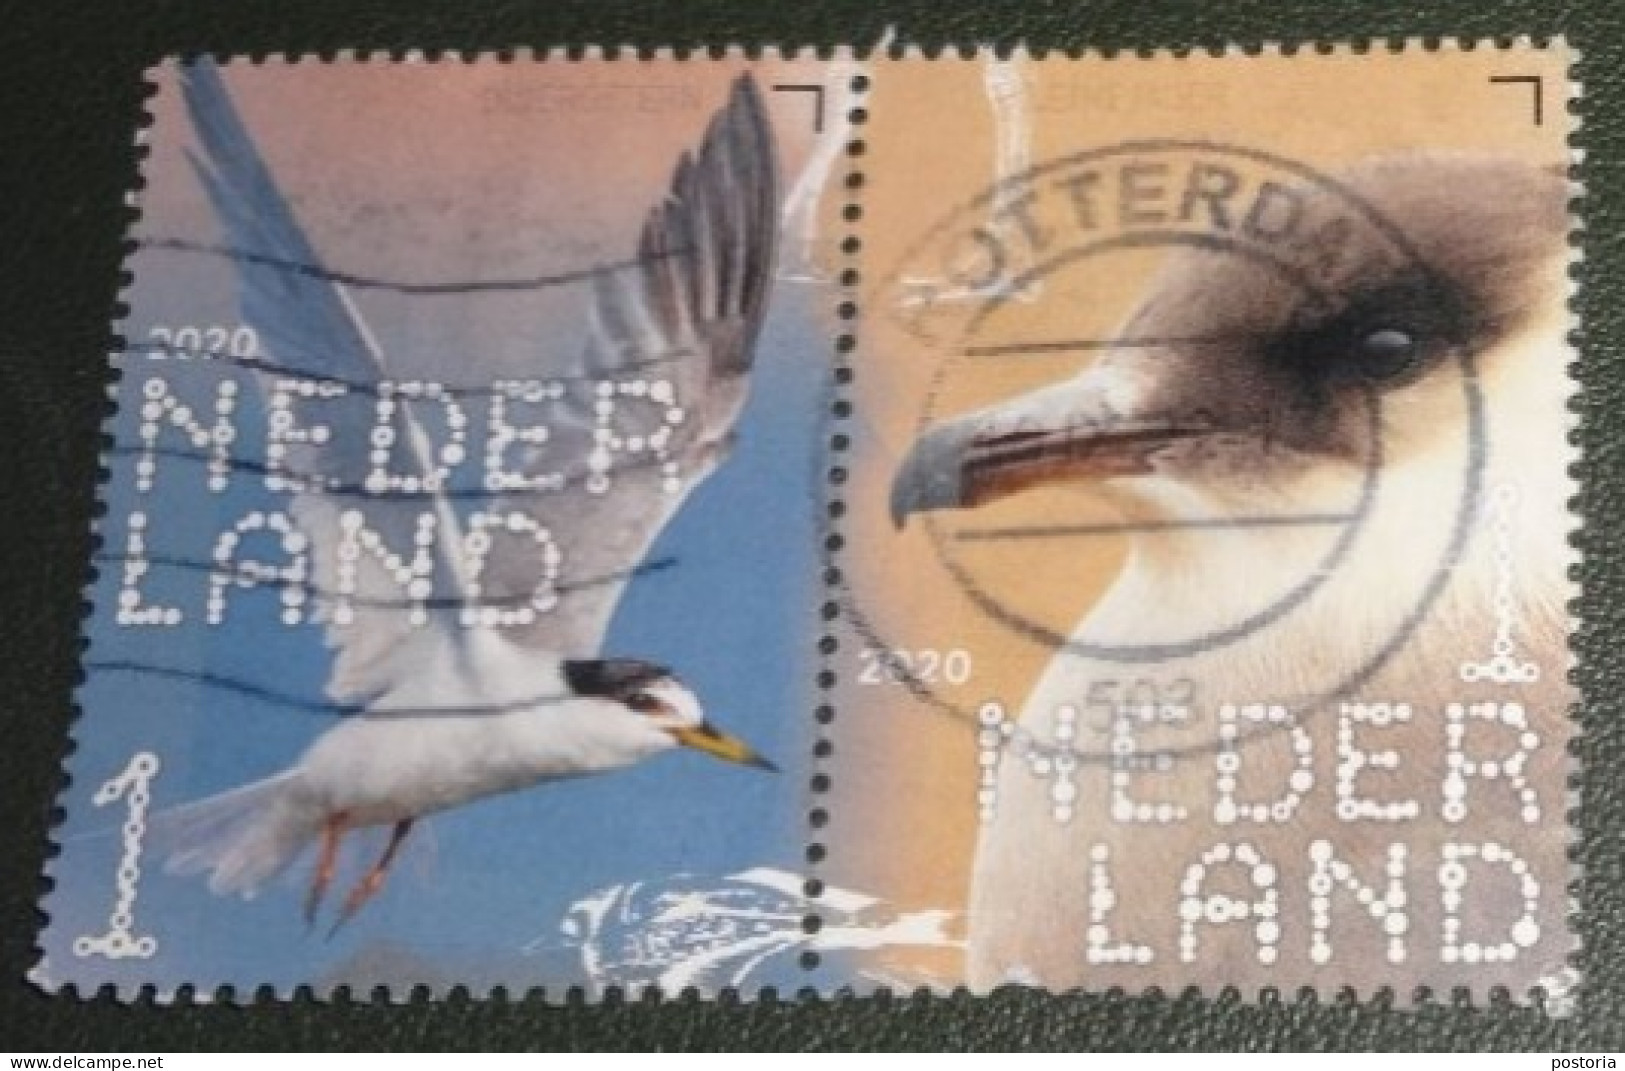 Nederland - NVPH - Xxxx - 2020 - Gebruikt - Used - Beleef De Natuur - Paar - Dwergstern En Kleine Jager - Used Stamps